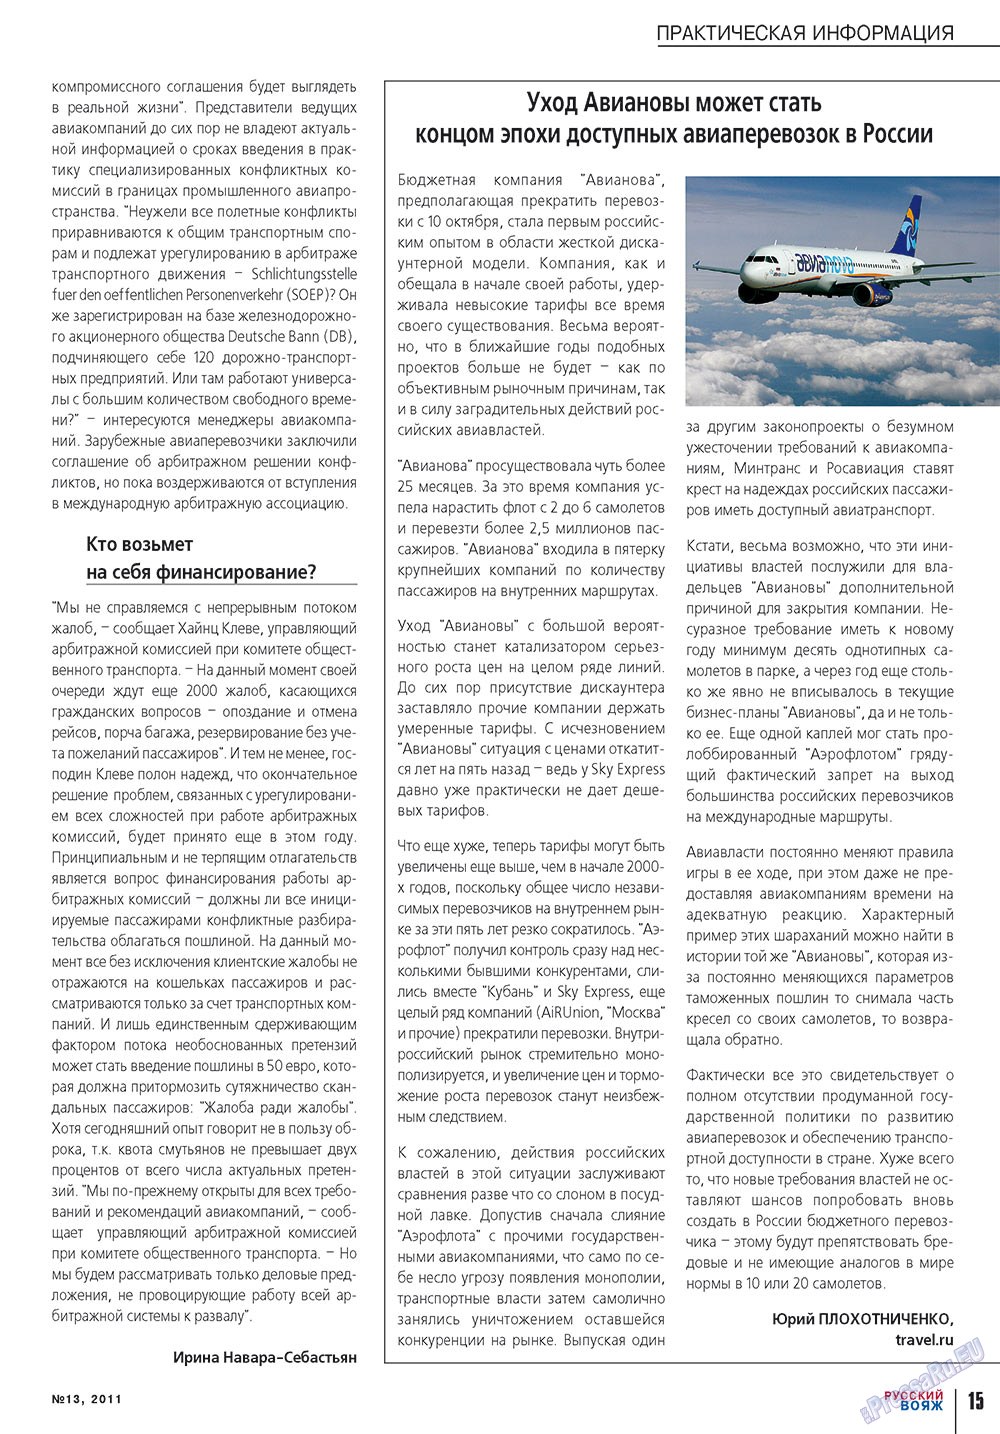 Русский вояж (журнал). 2011 год, номер 13, стр. 15